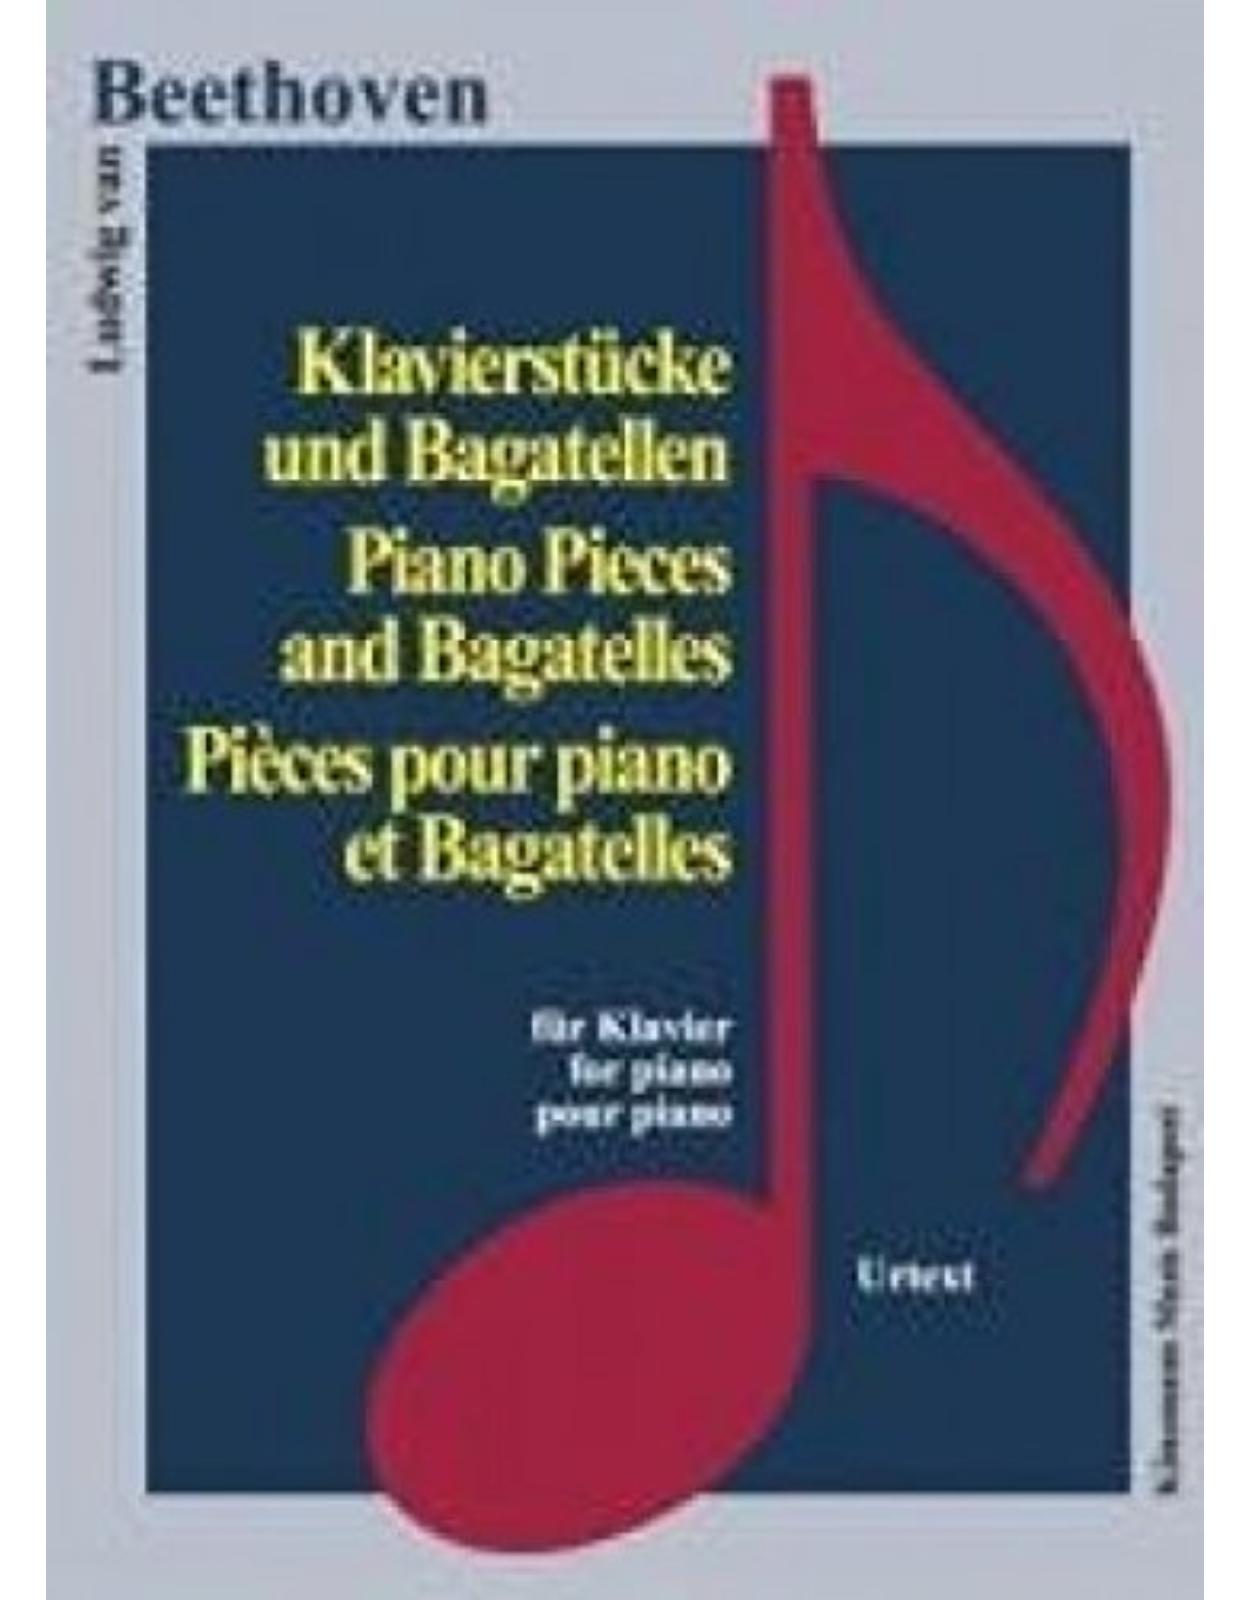 Beethoven, Klavierstücke und Bagatellen